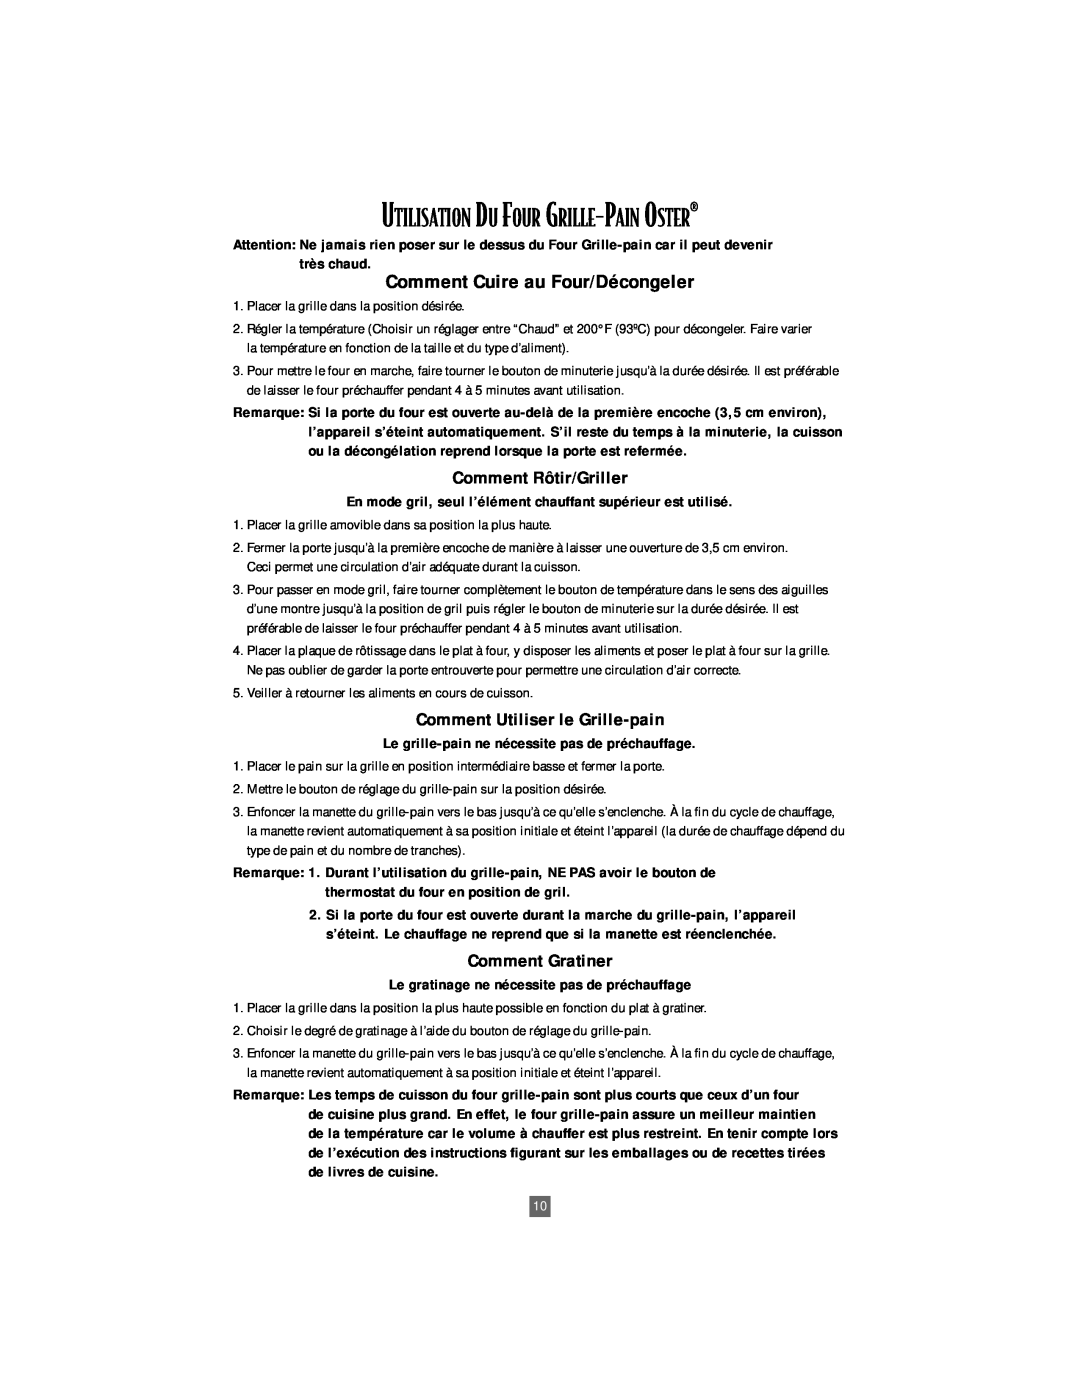 Oster 6205, 6204 manual Utilisation Du Four Grille-Pain Oster¨, Comment Cuire au Four/Décongeler 